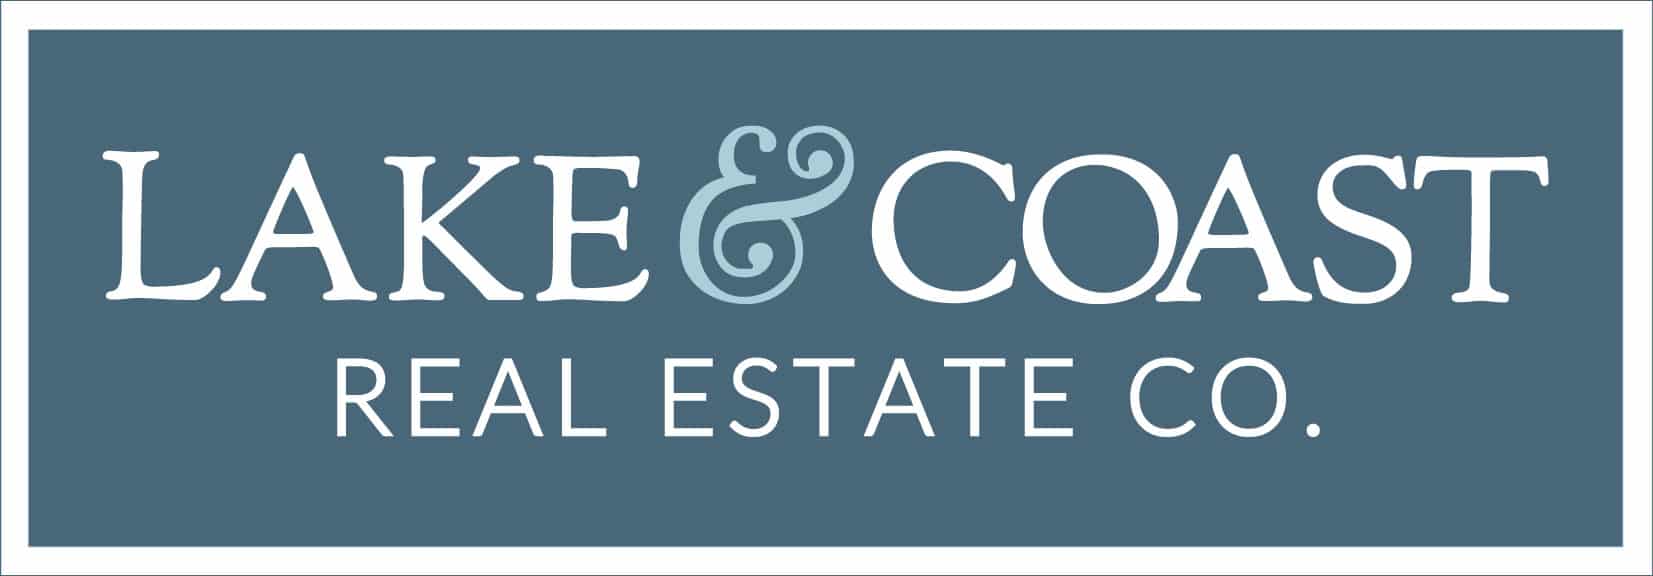 Lake & Coast Real Estate Co.